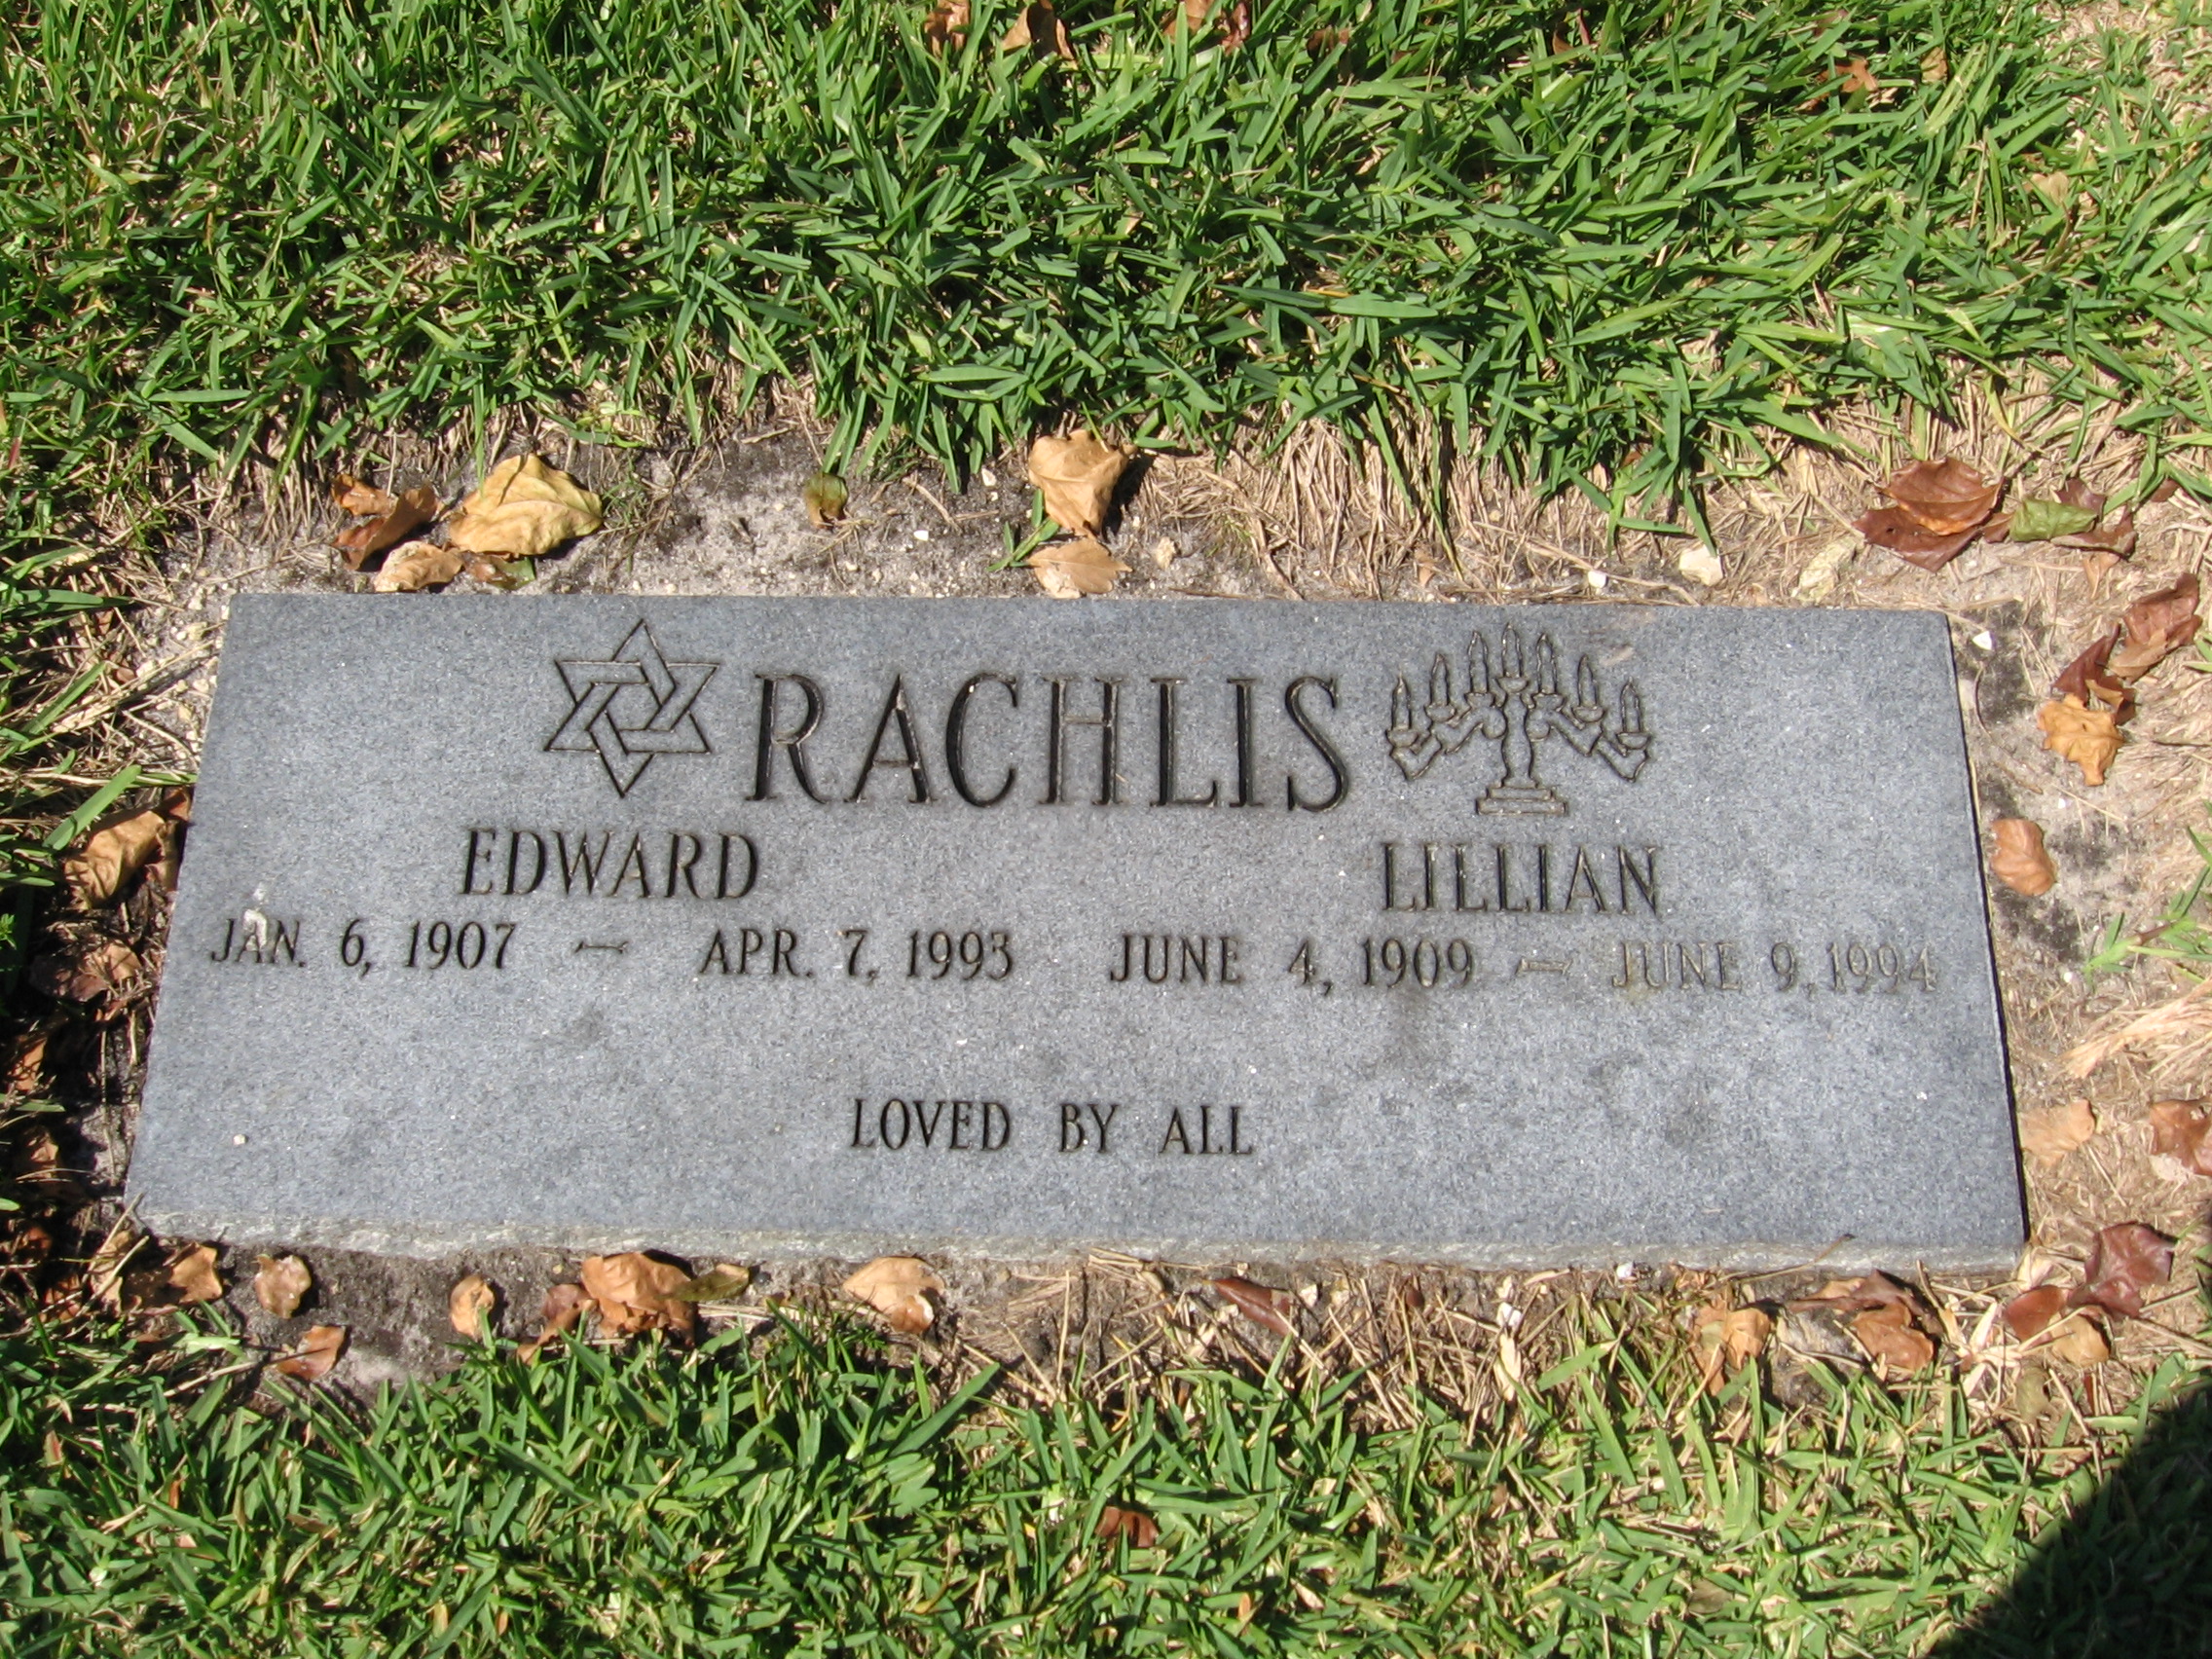 Lillian Rachlis